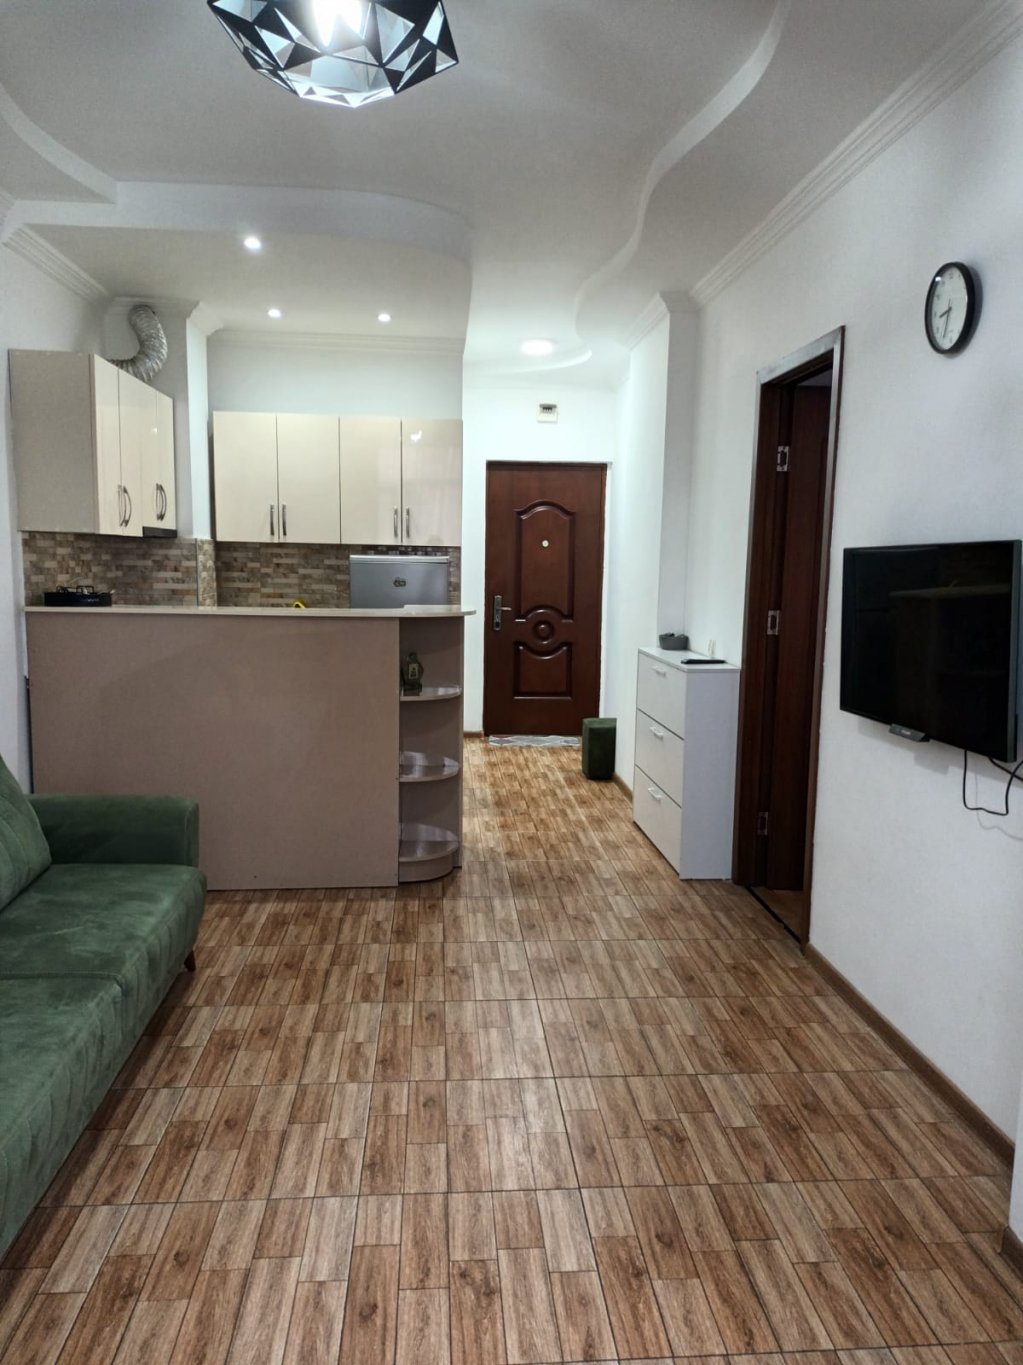 2-комнатная квартира на ул. В.Горгасали id-642 - аренда апартаментов в Батуми